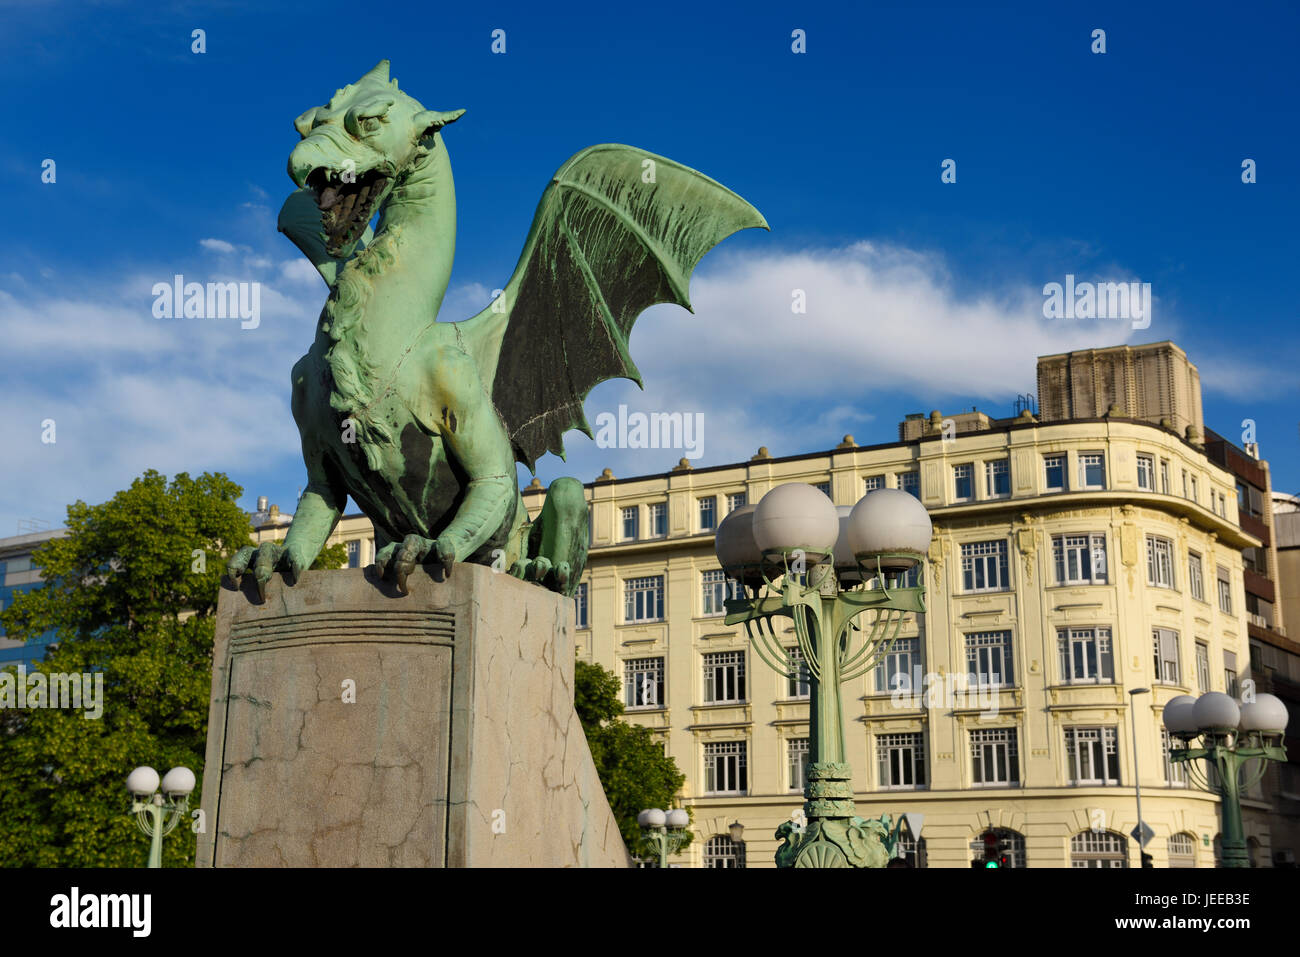 Green Dragon statue en cuivre sur socle en béton de Dragon Pont sur la rivière Ljubljanica symbole de Ljubljana Slovénie avec lampe posts Banque D'Images